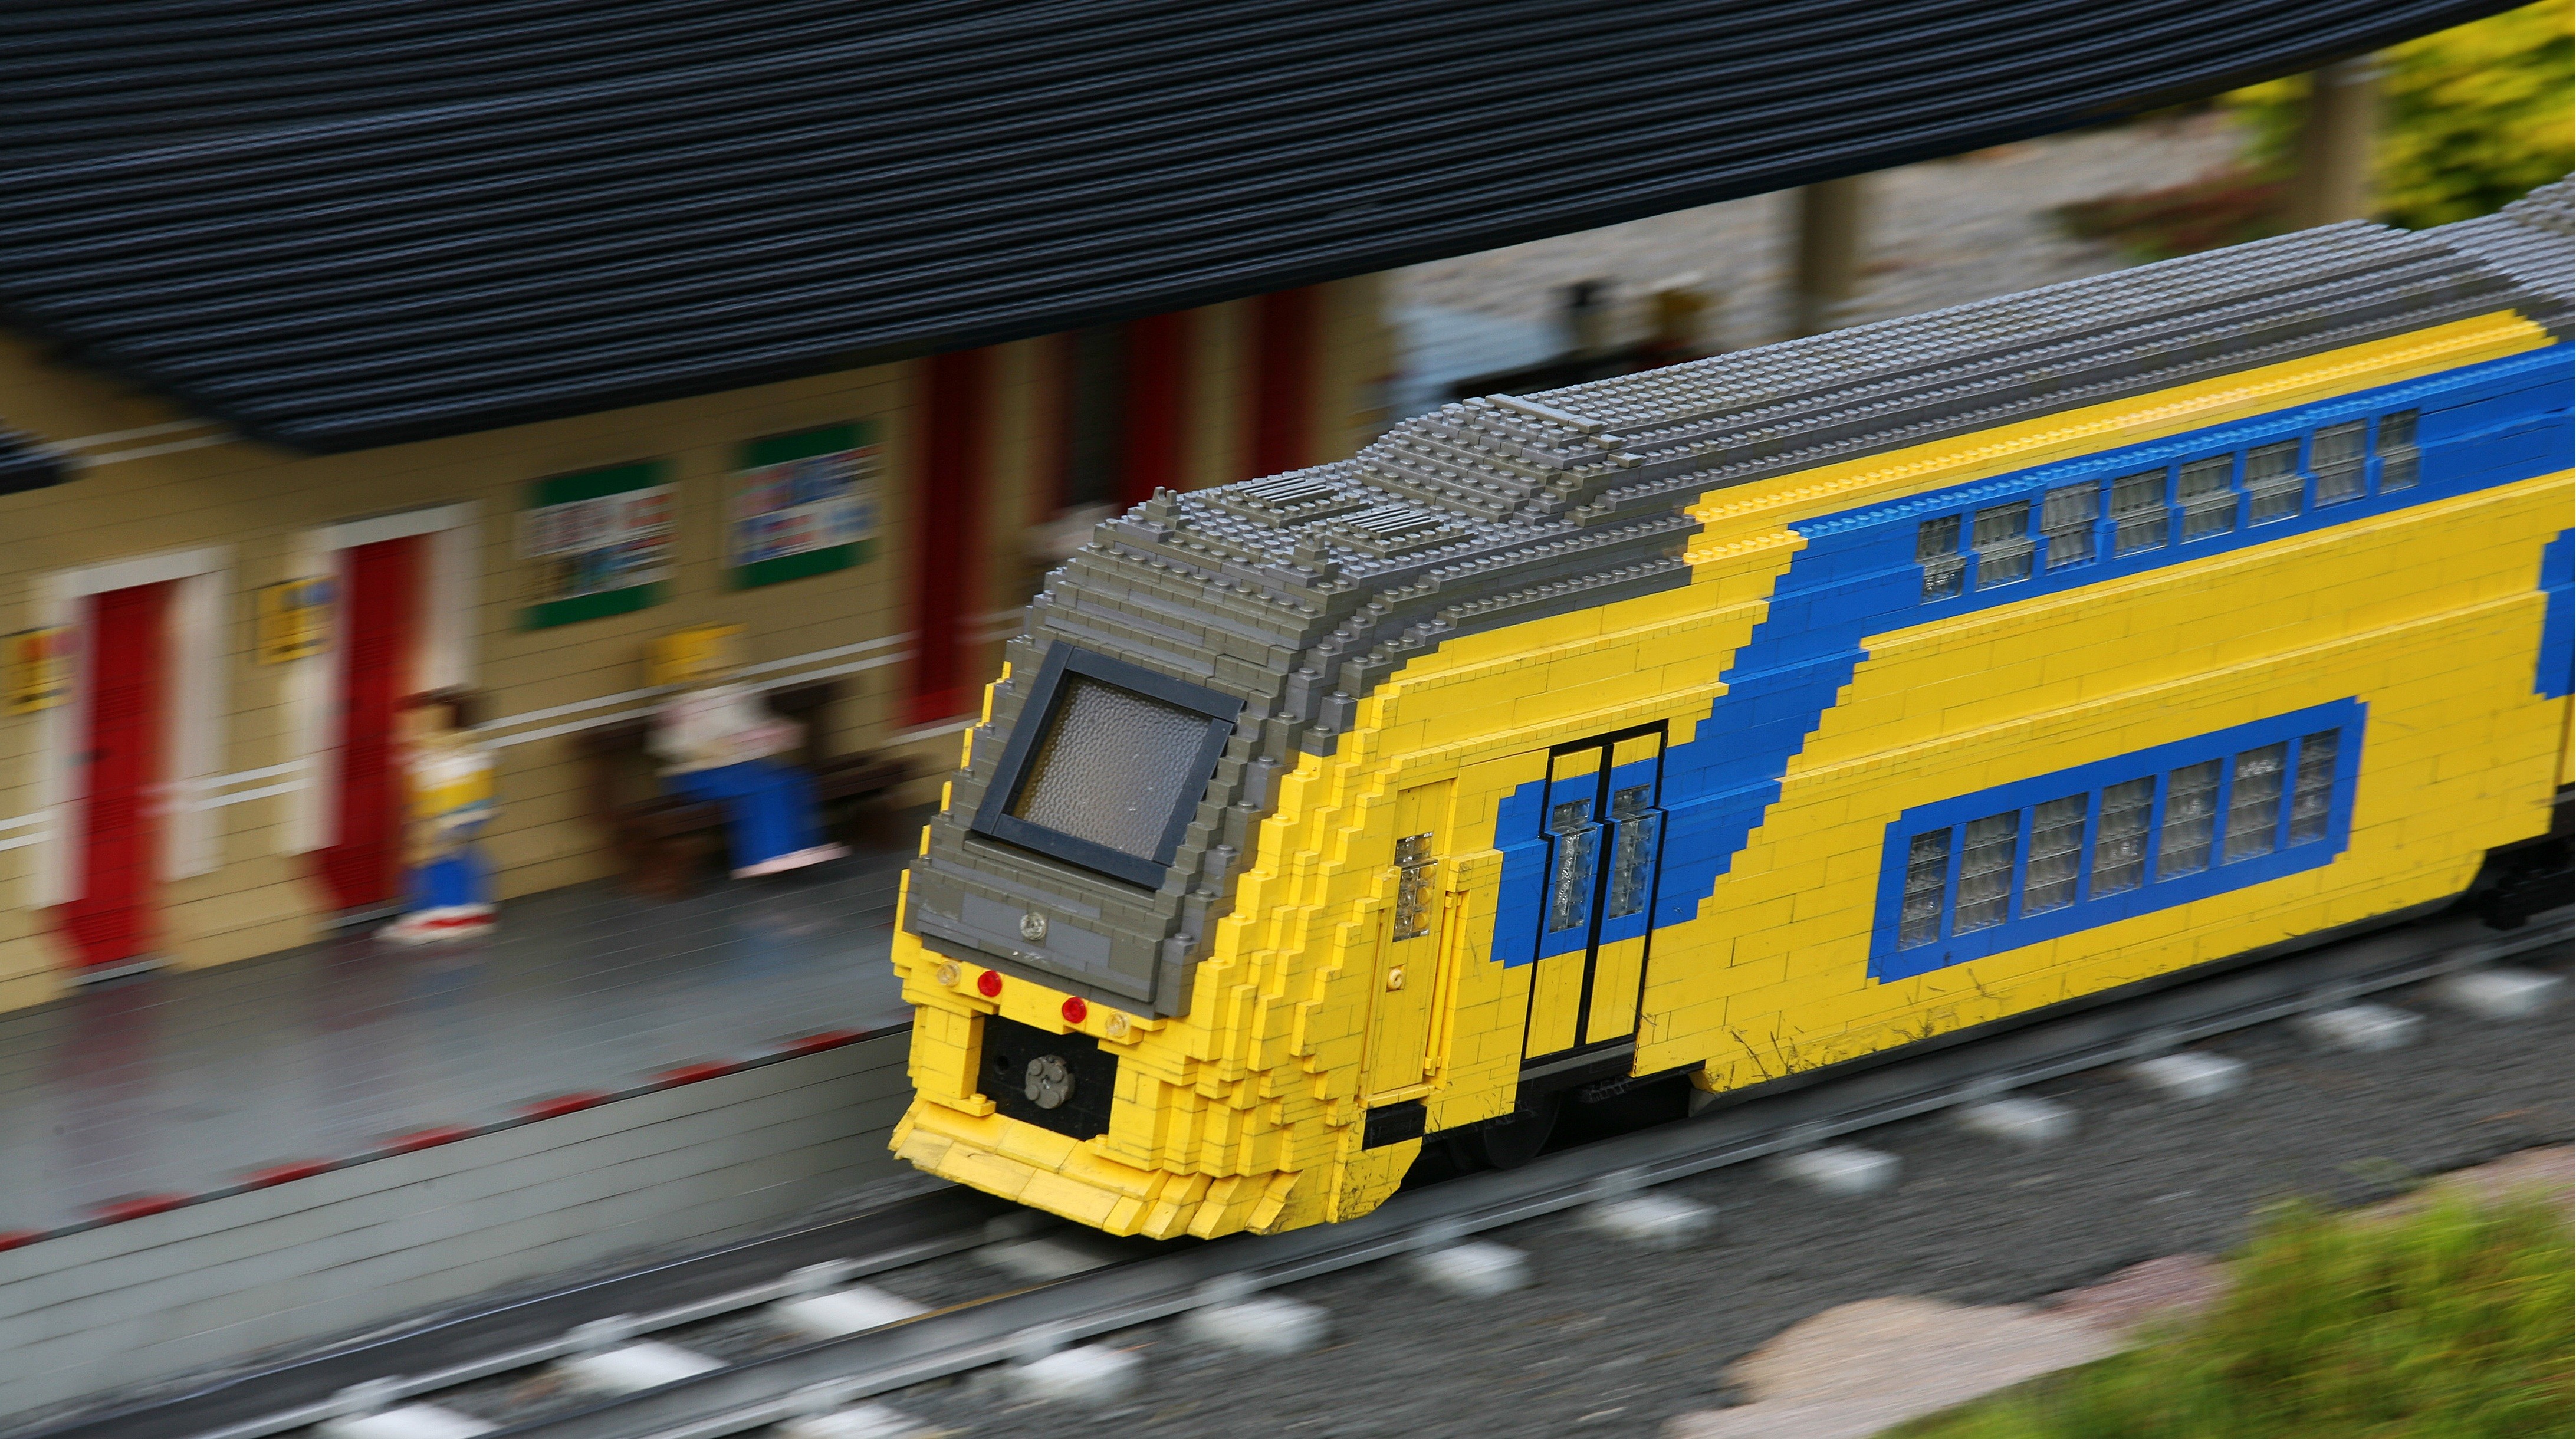 LEGO Toys Bricks Train Diesel Locomotive Train Station Railway Railway Station Blurred Motion Blur 4368x2440